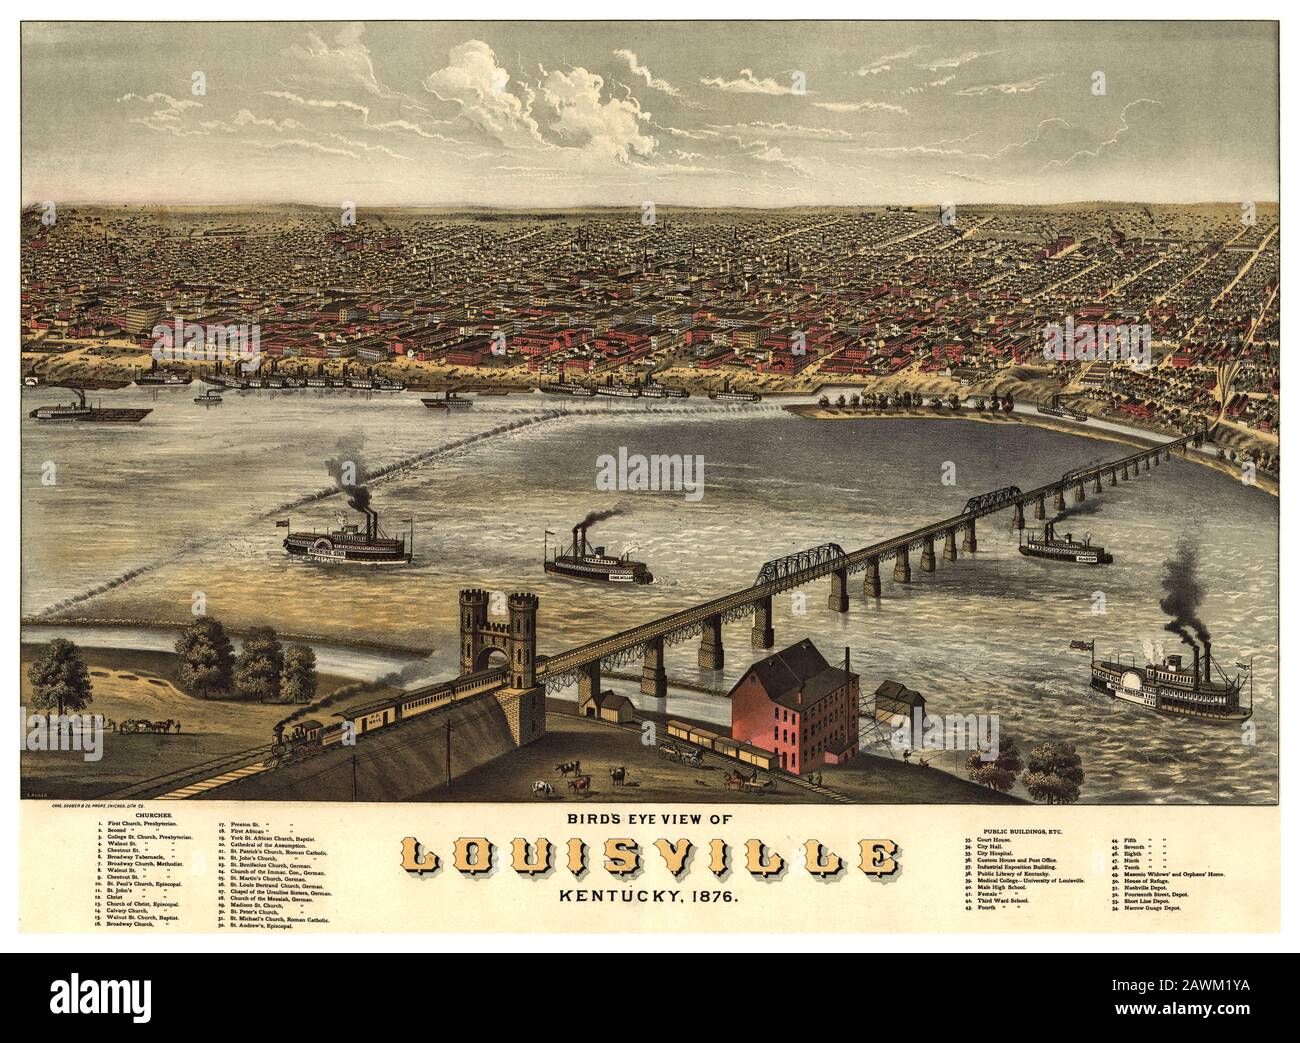 Vintage LOUISVILLE Kentucky affiche illustration haute résolution 1876 Lithographe Birds Eye View avec des bâtiments importants annotés Banque D'Images